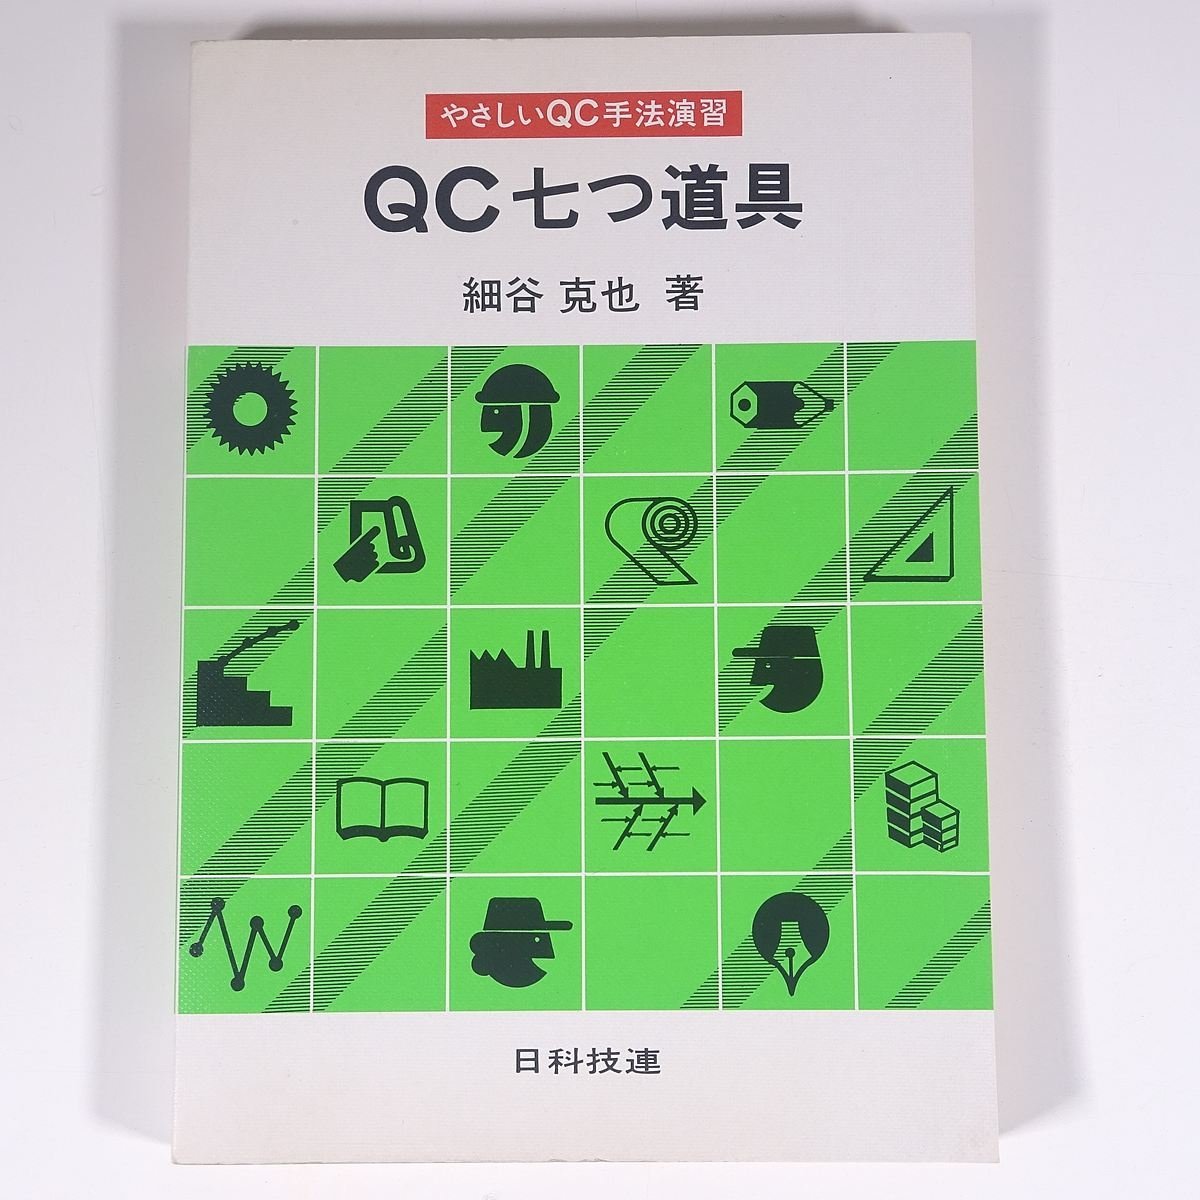 やさしいQC手法演習 QC七つ道具 細谷克也 日科技連出版社 1984 単行本 ビジネス書_画像1